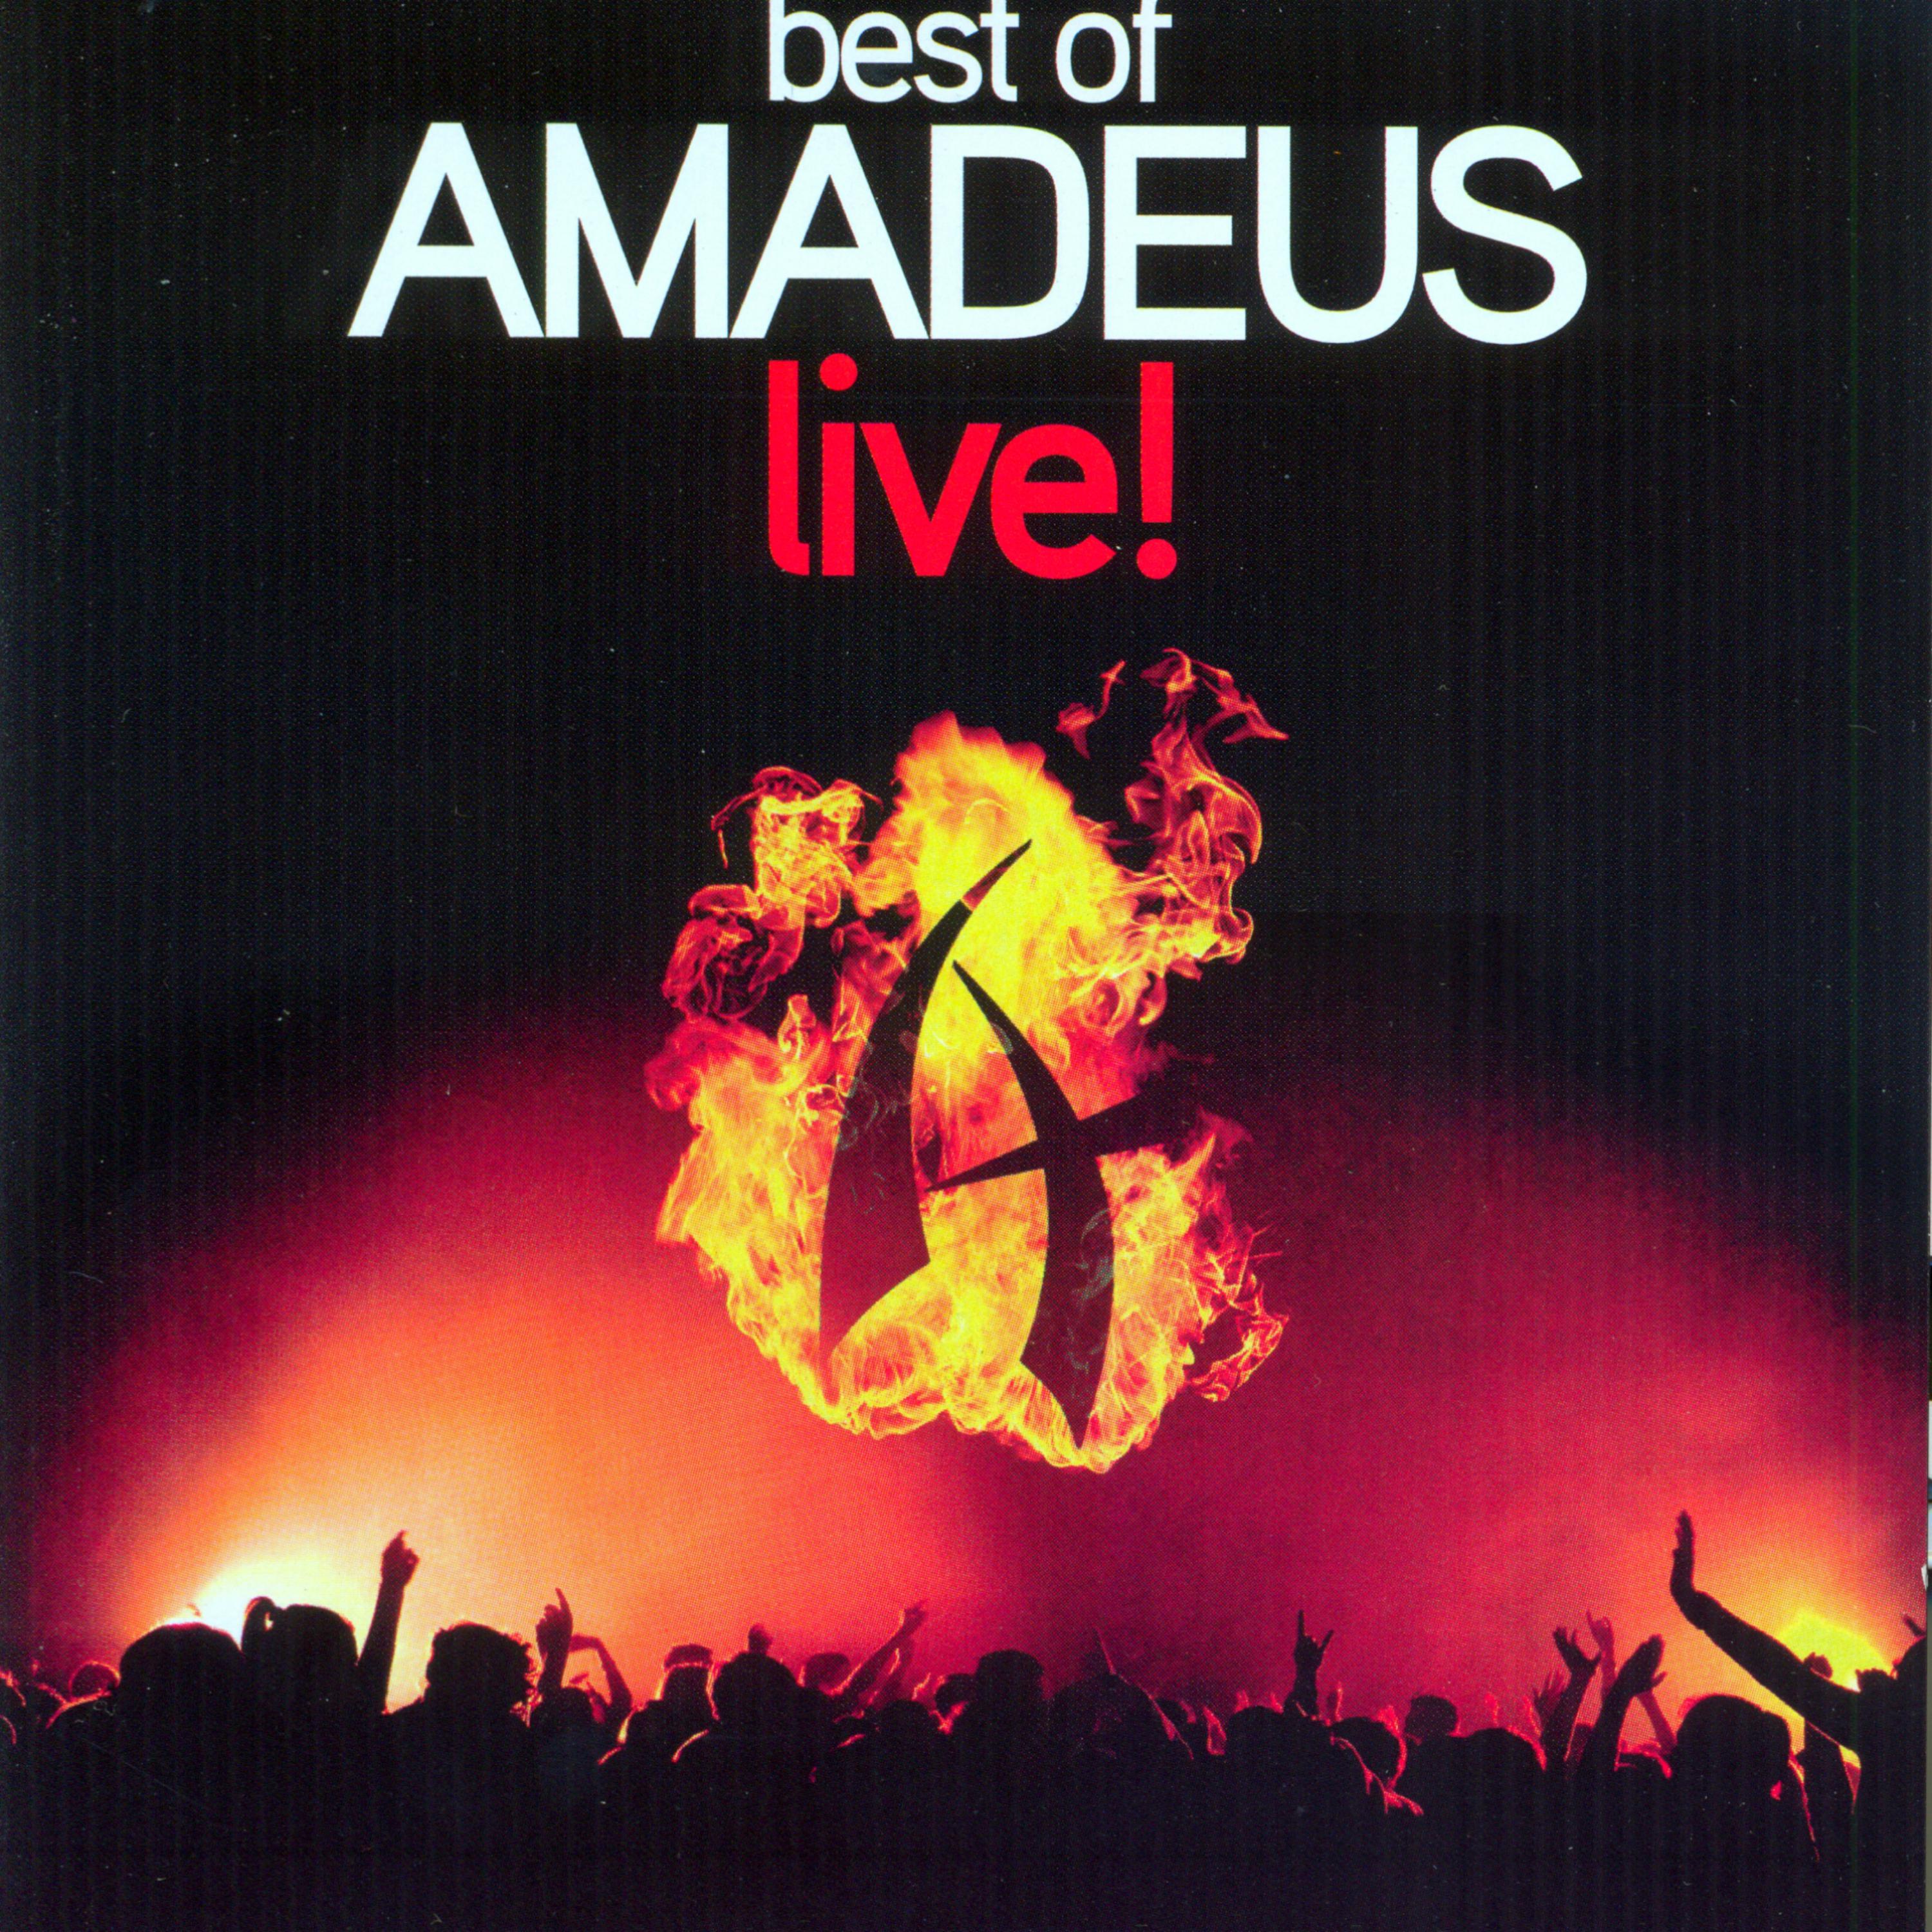 Best of Amadeus live